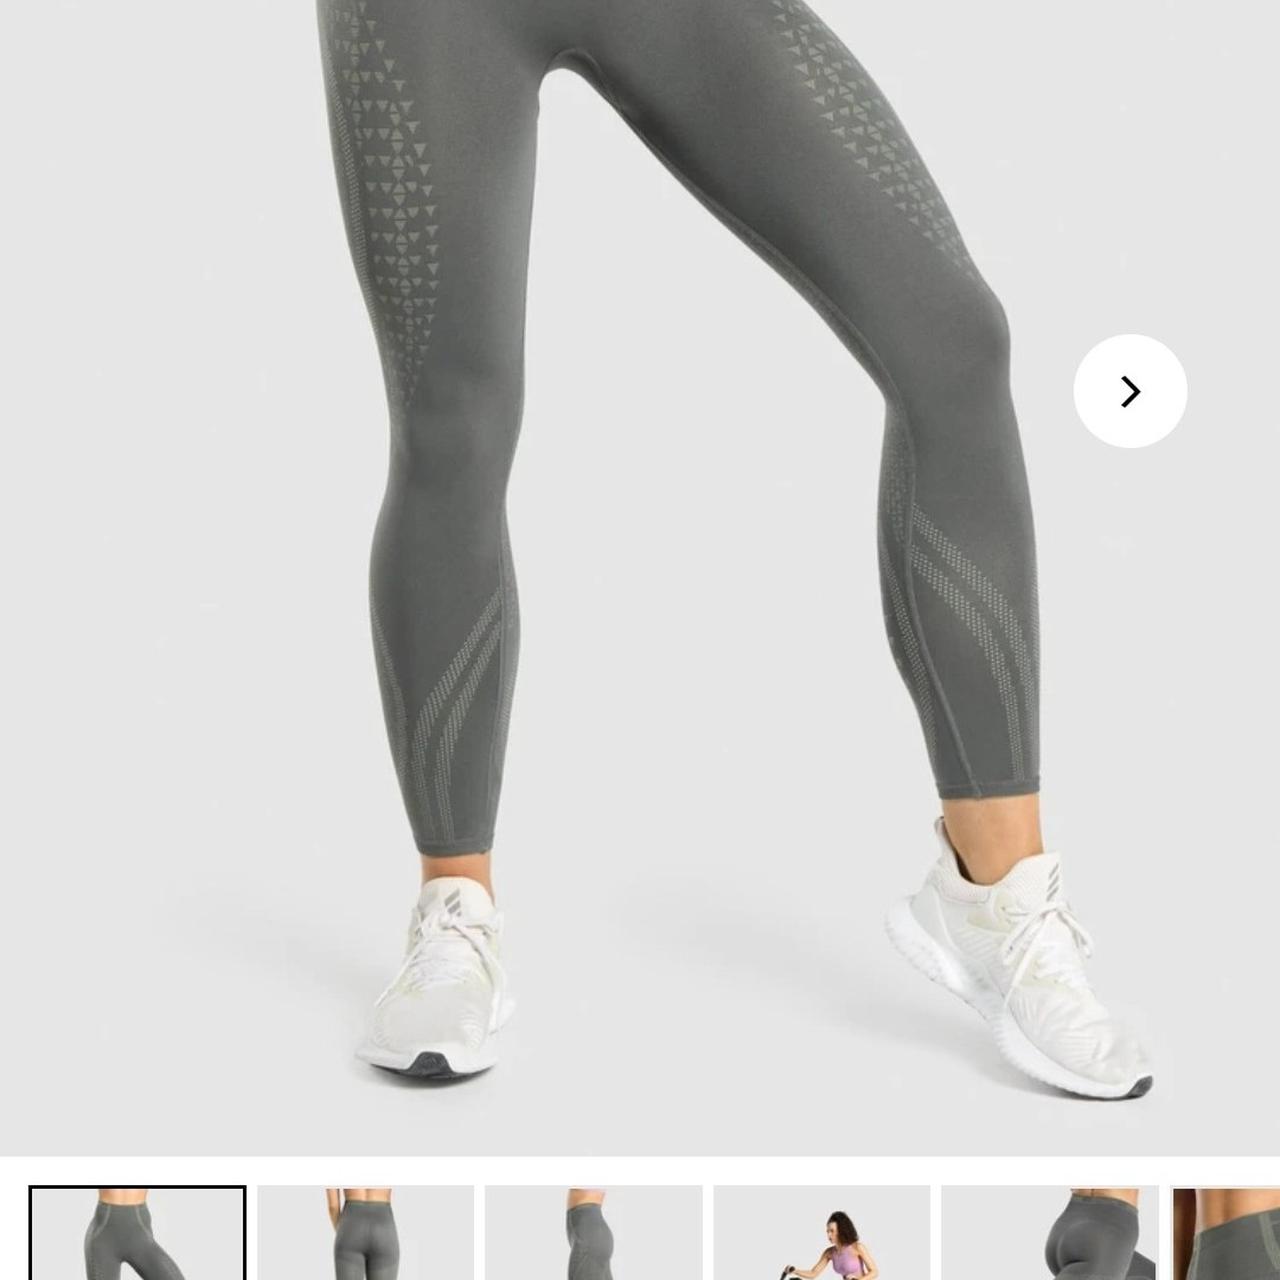 NEW Gymshark Apex Seamless leggings 💙 @Gymshark #squatchallenge #legg